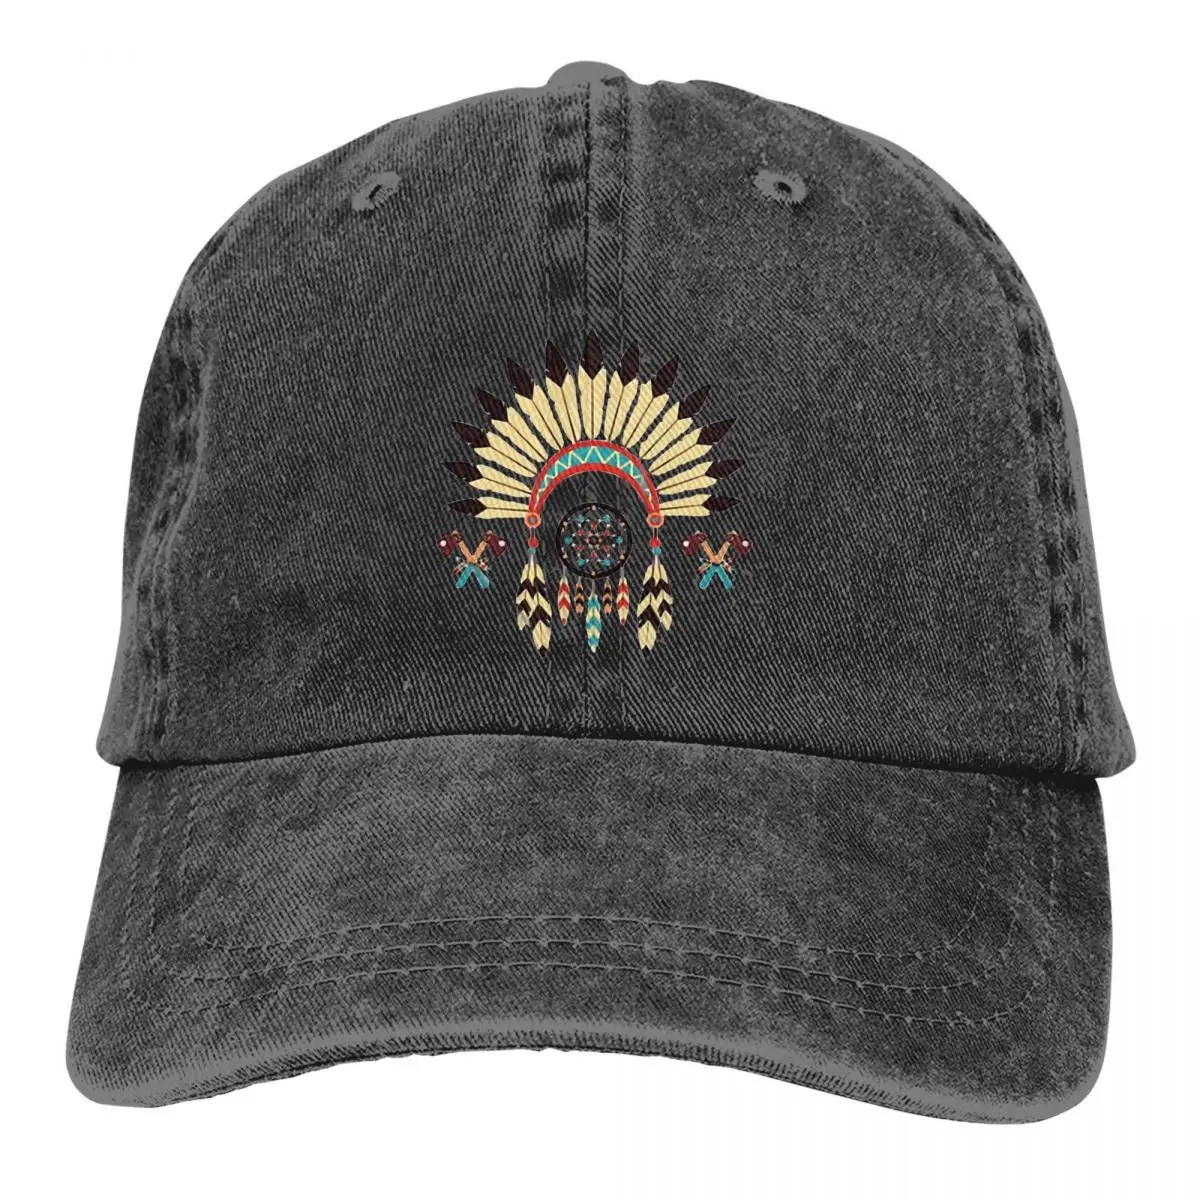 Бейсболка Blackfoot Indians, мужские шляпы, женские кепки с защитным козырьком, бейсболки индейского племени Snapback